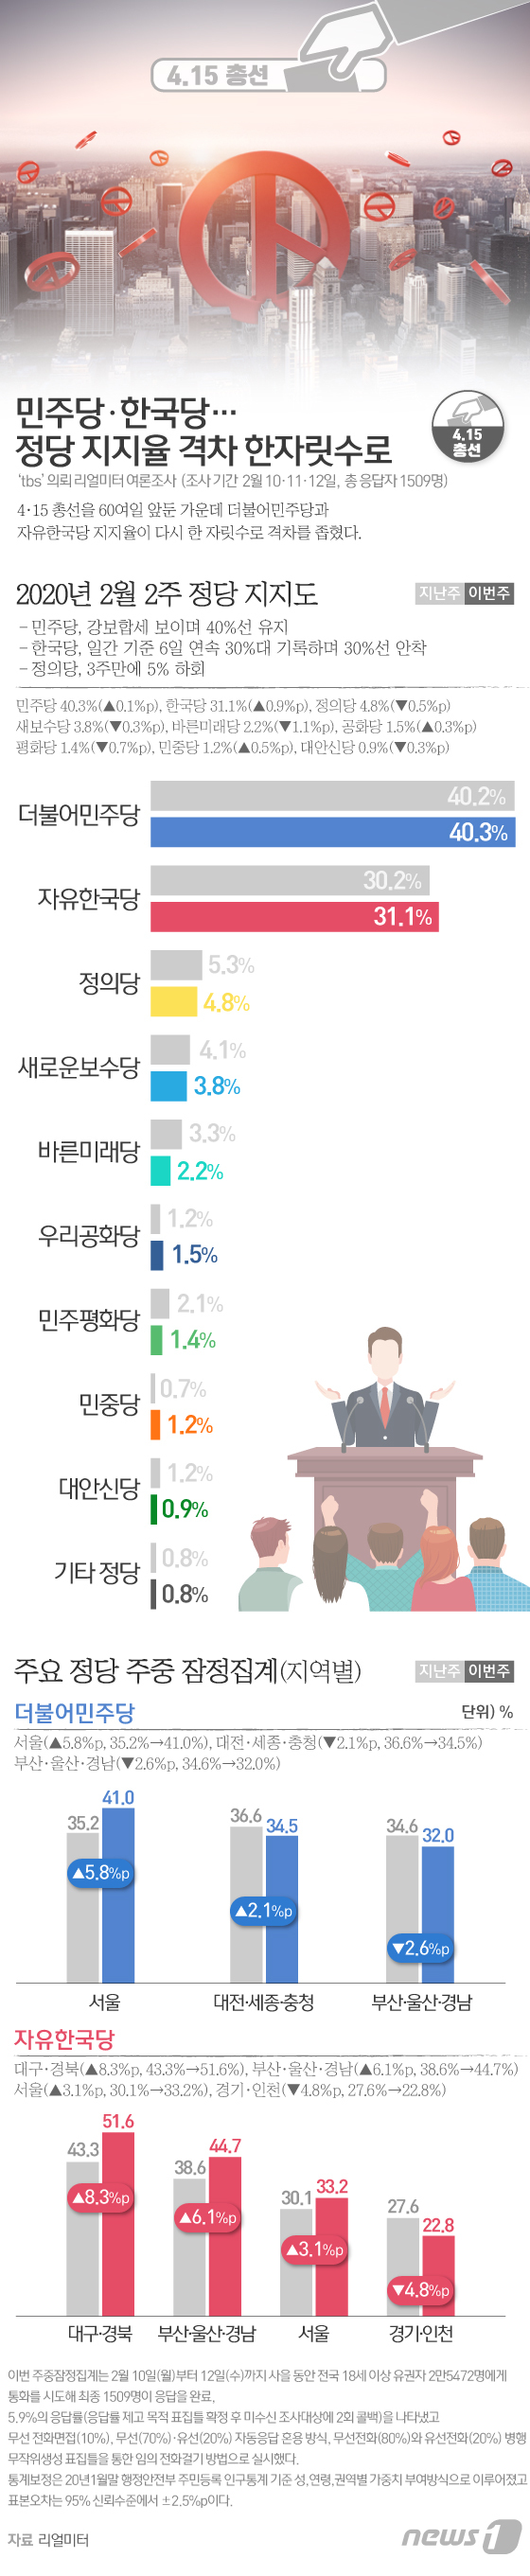 [그래픽뉴스] 민주당ㆍ한국당 정당 지지율 격차 한자릿수로